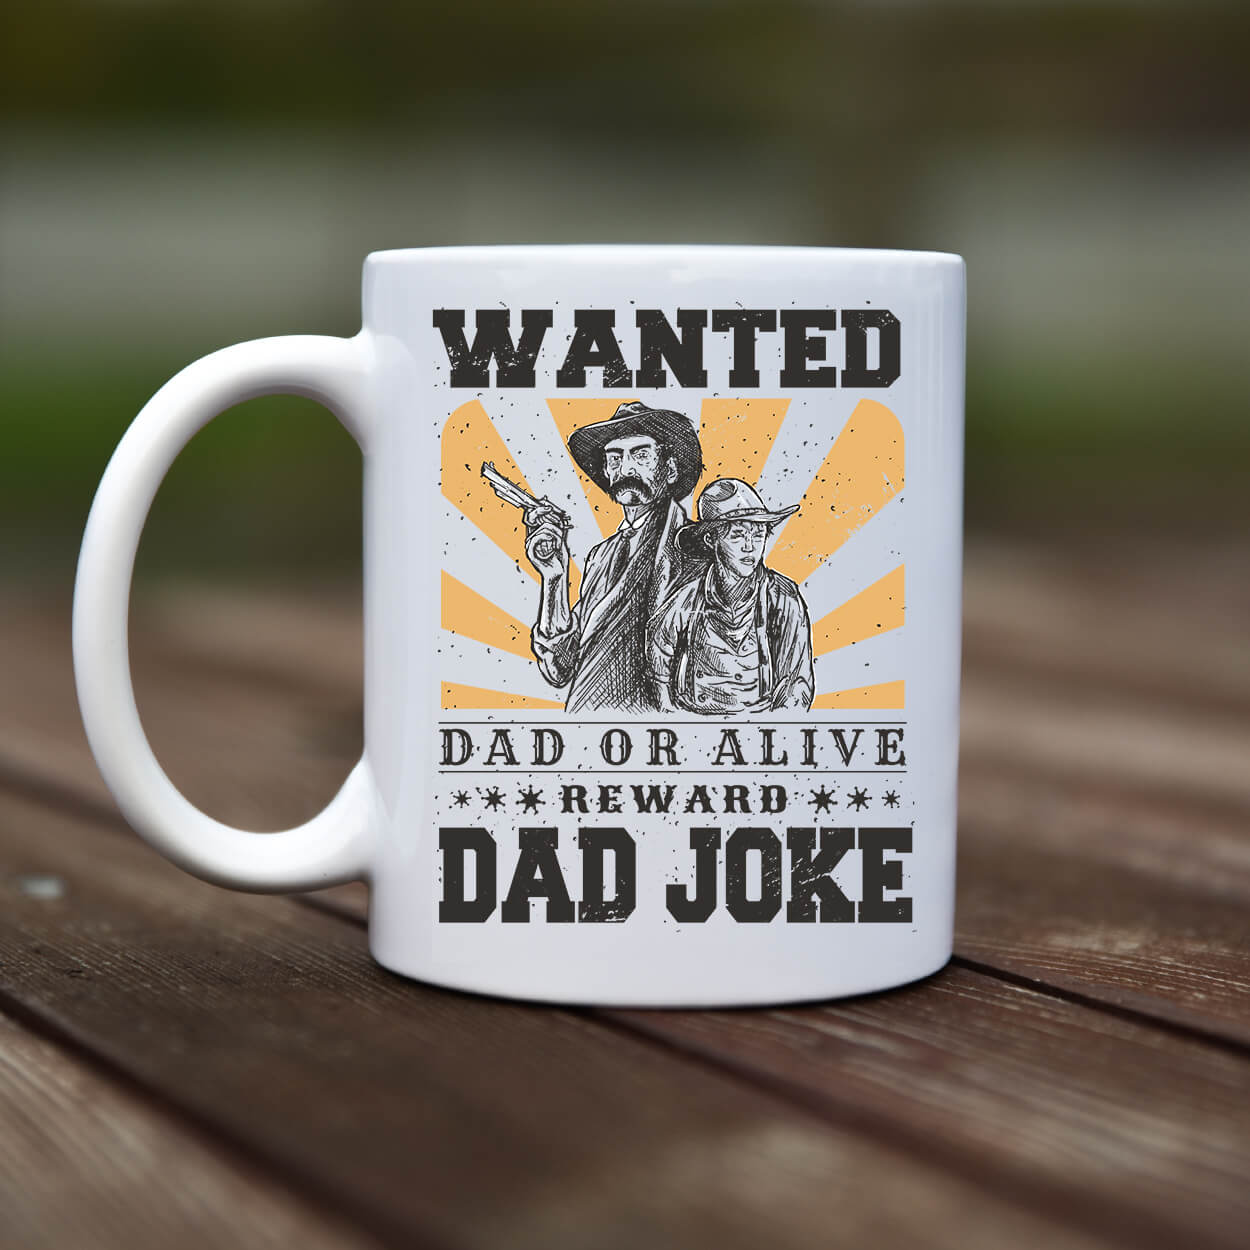 Mug - Dad joke - rvdesignprint